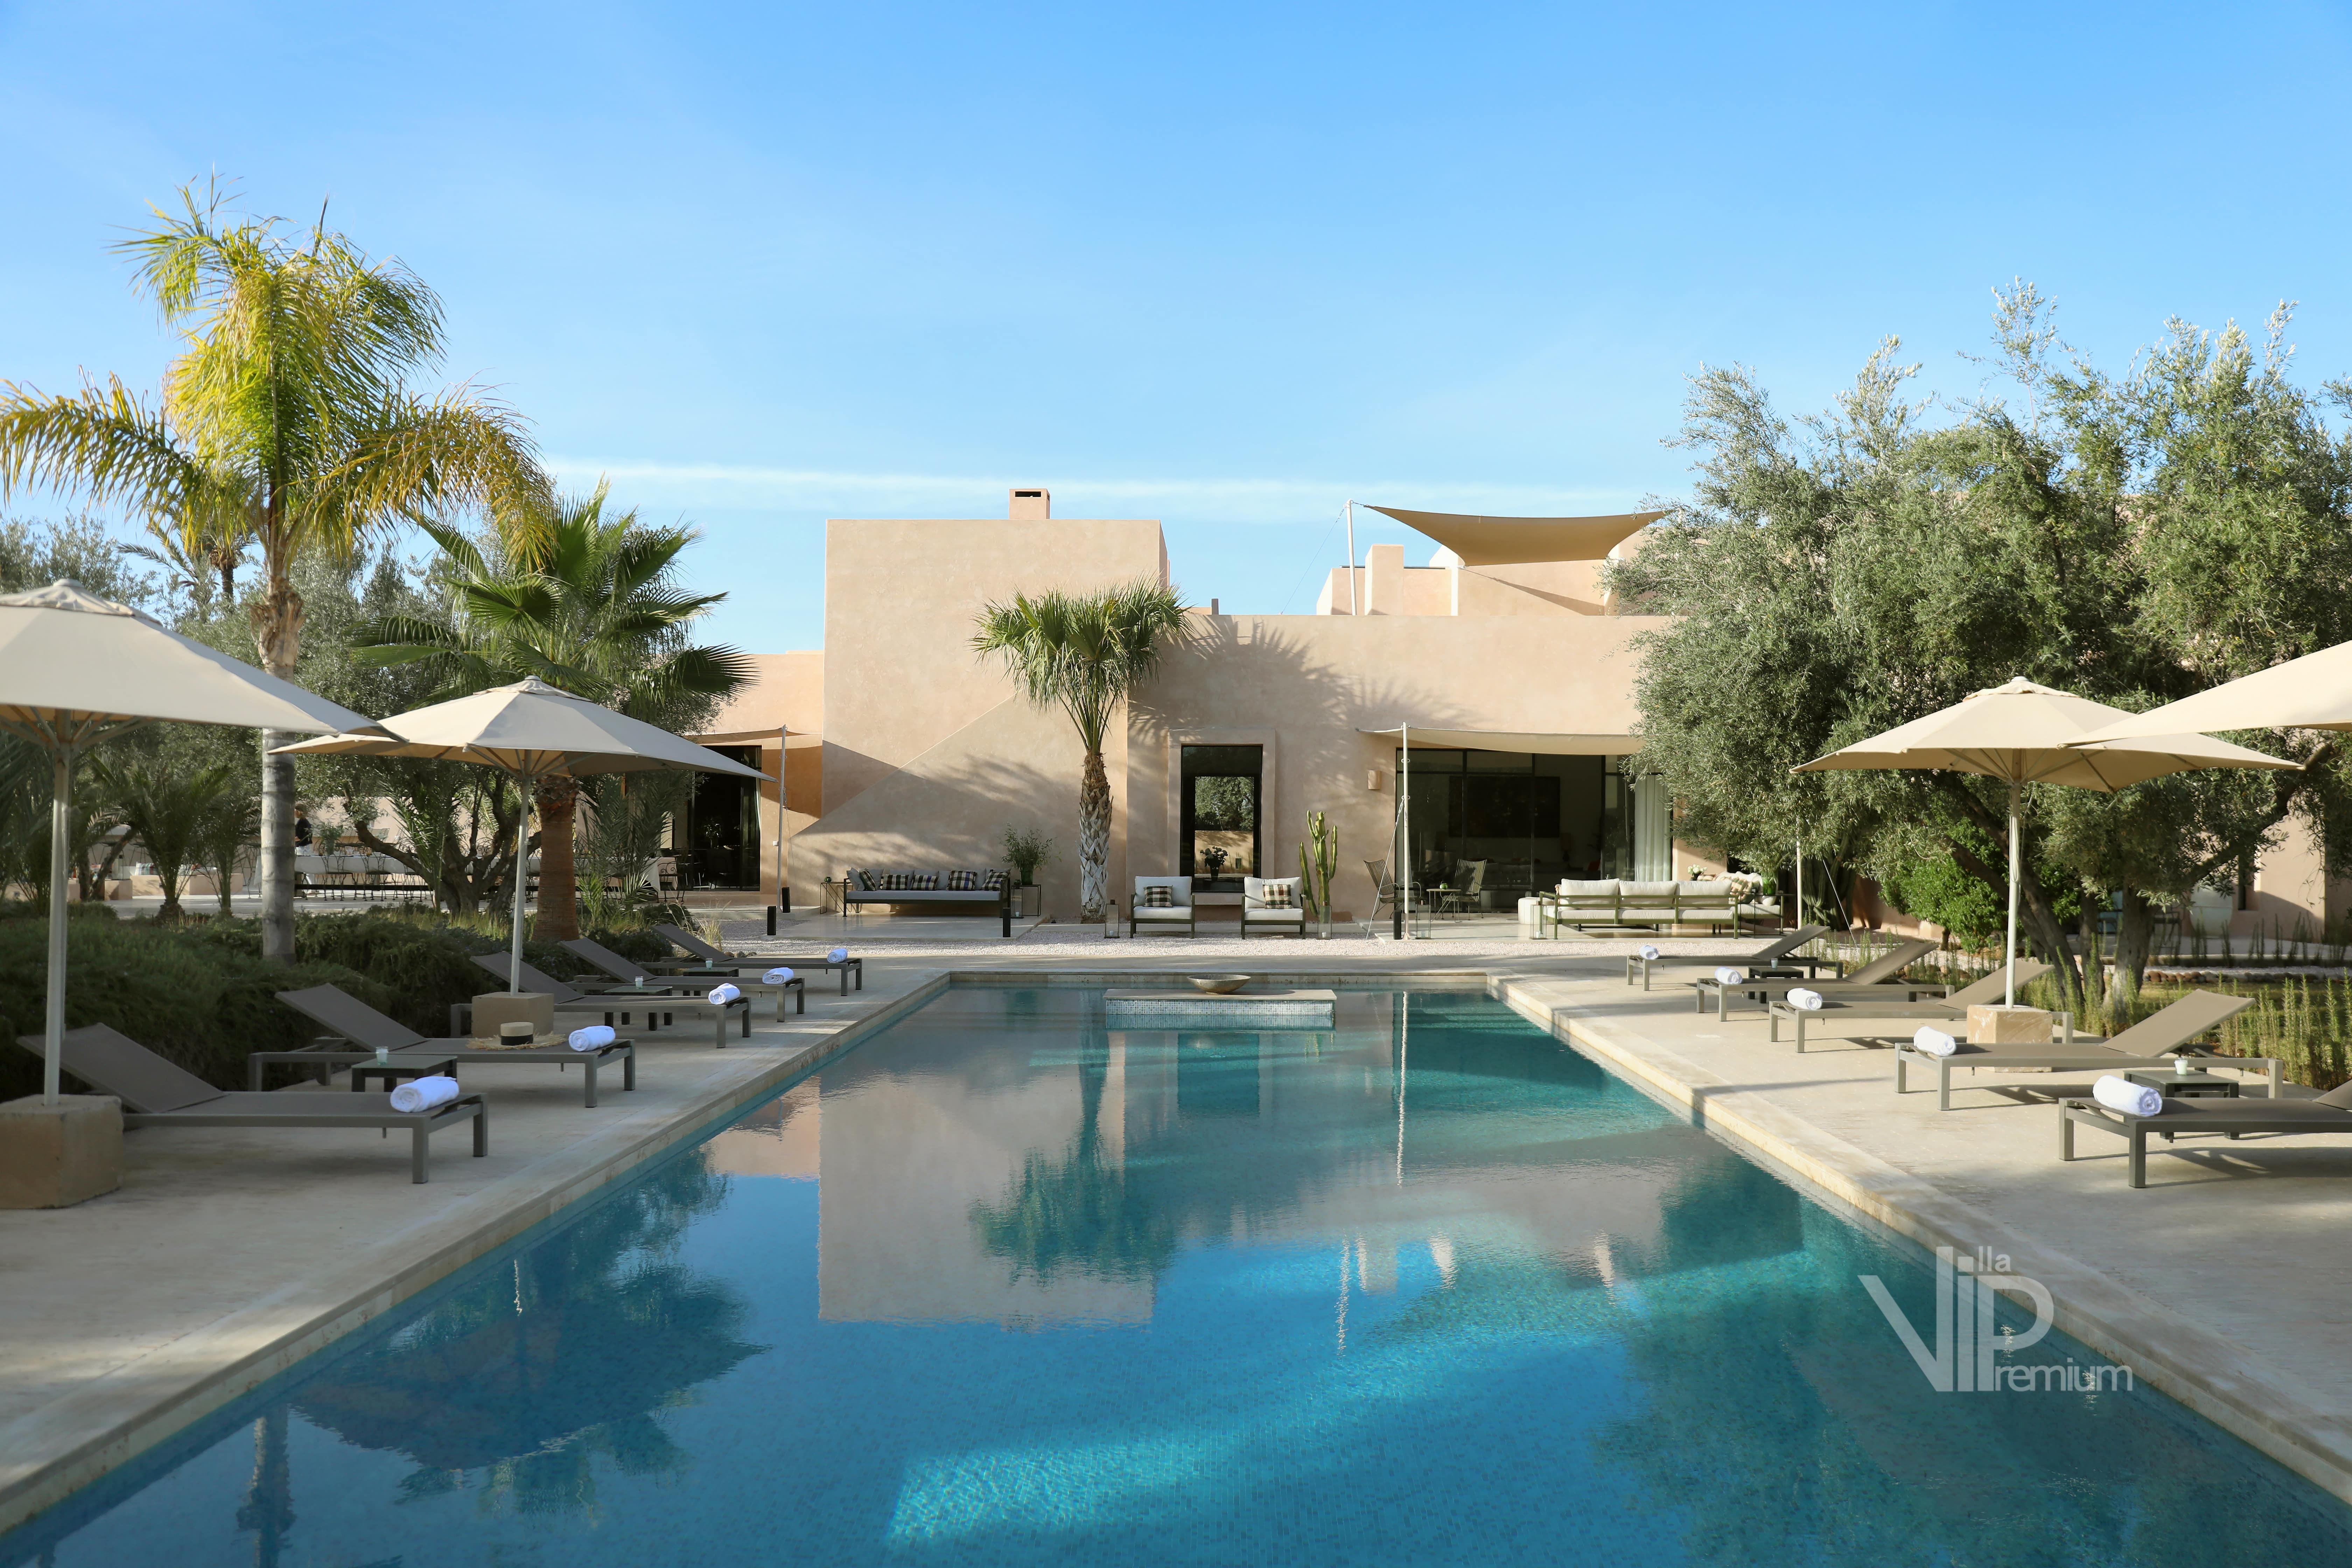 Rent Villa Amerina Marrakech